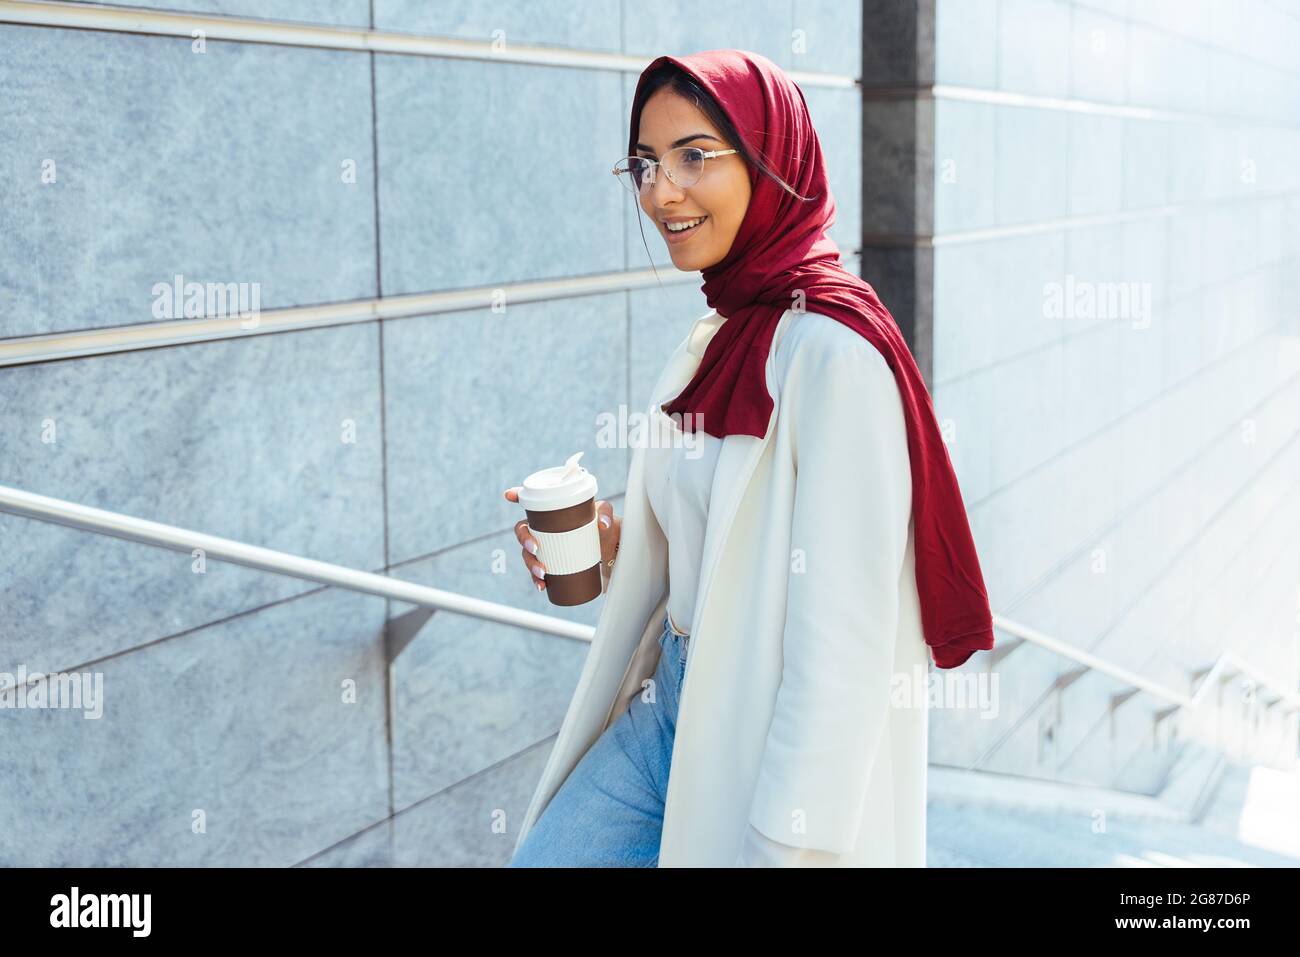 Fille musulmane portant des vêtements décontractés et un portrait hijab  traditionnel - belle femme arabe avec des vêtements élégants Photo Stock -  Alamy